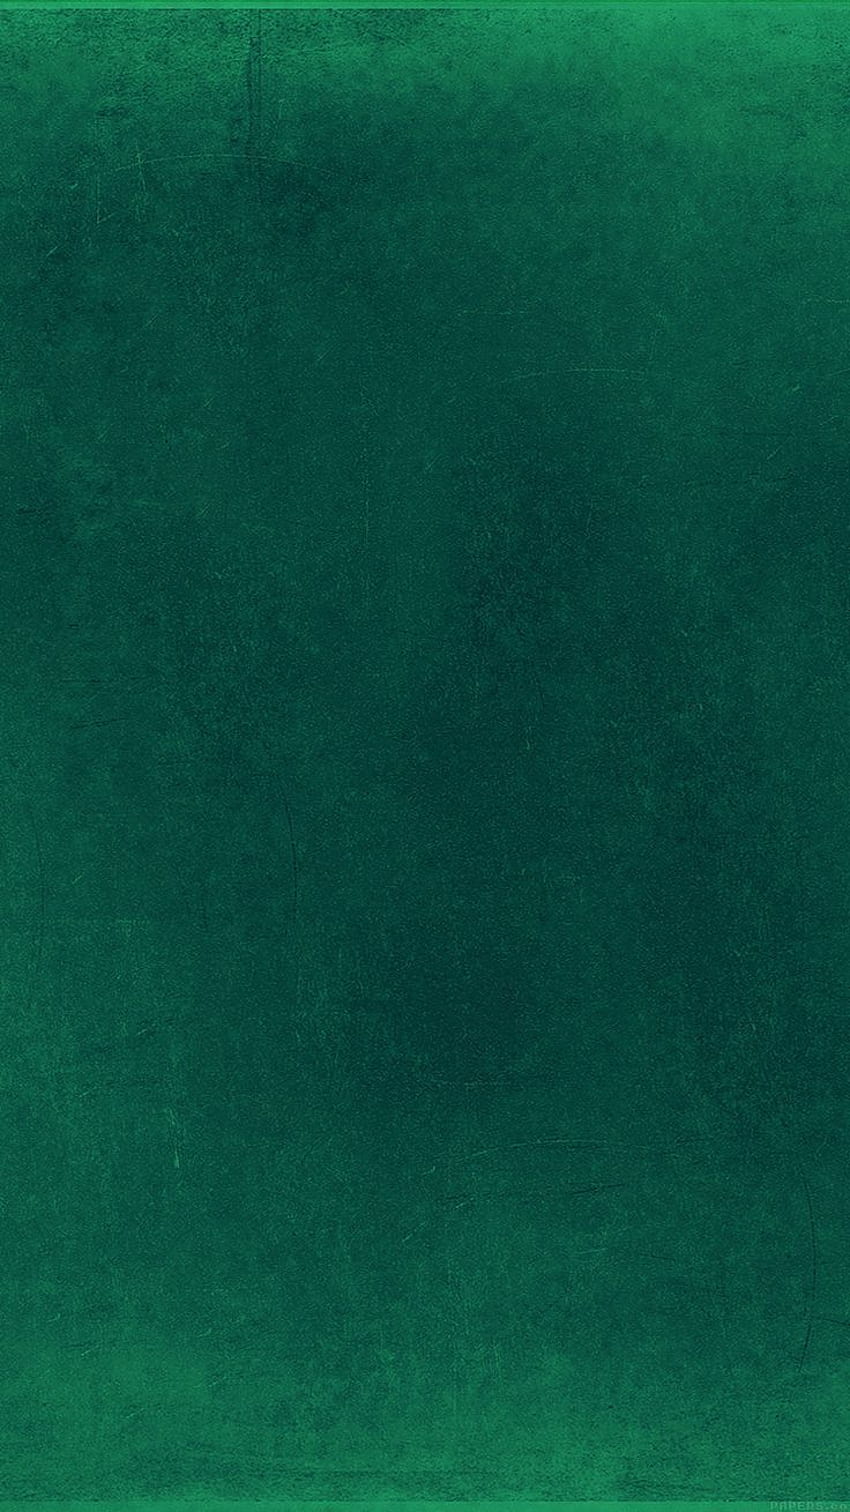 Soft Grunge Green Texture iPhone 6 â Eating Palace HD phone wallpaper